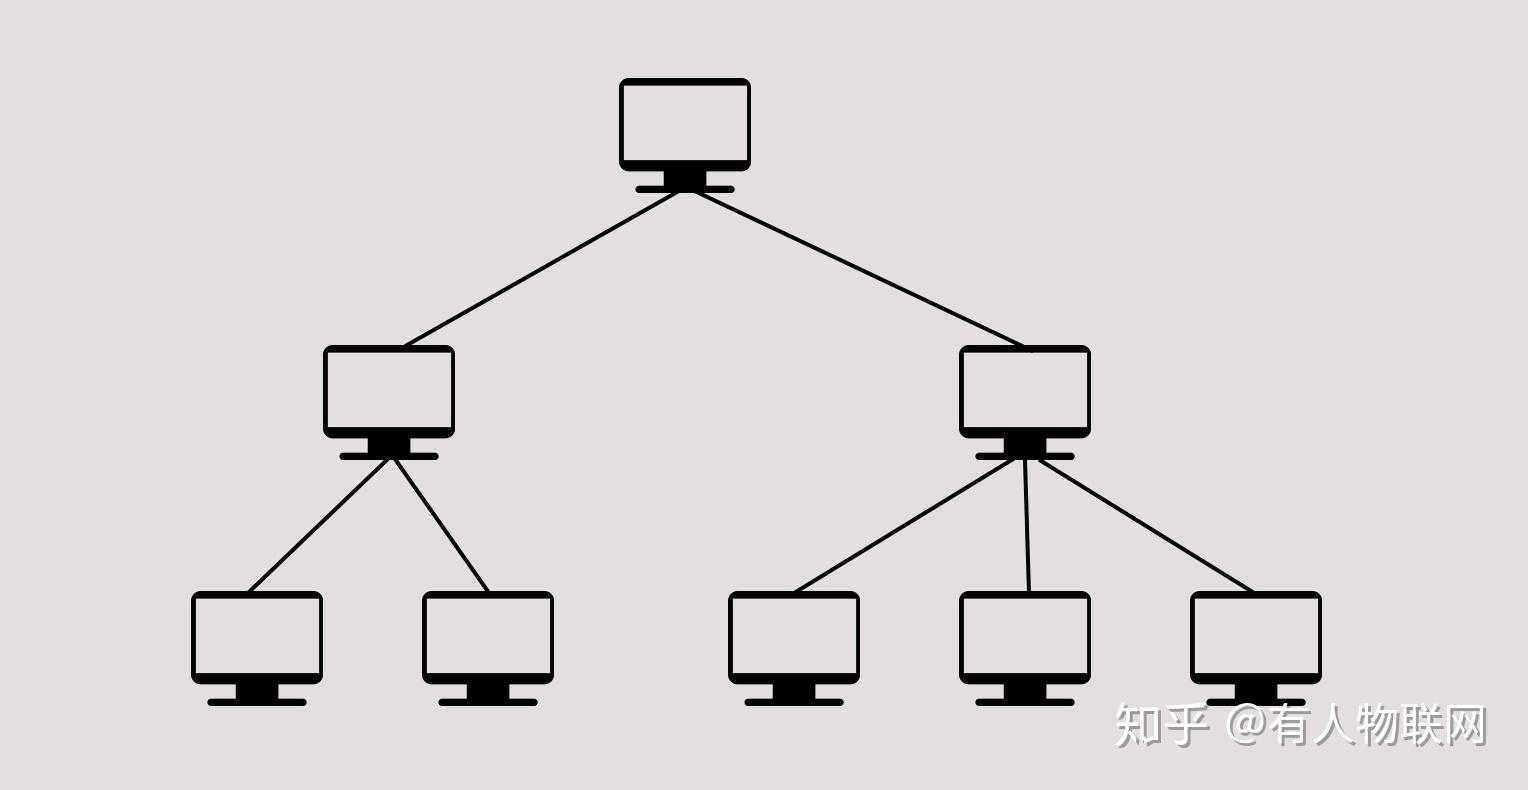 计算机网络的拓扑结构